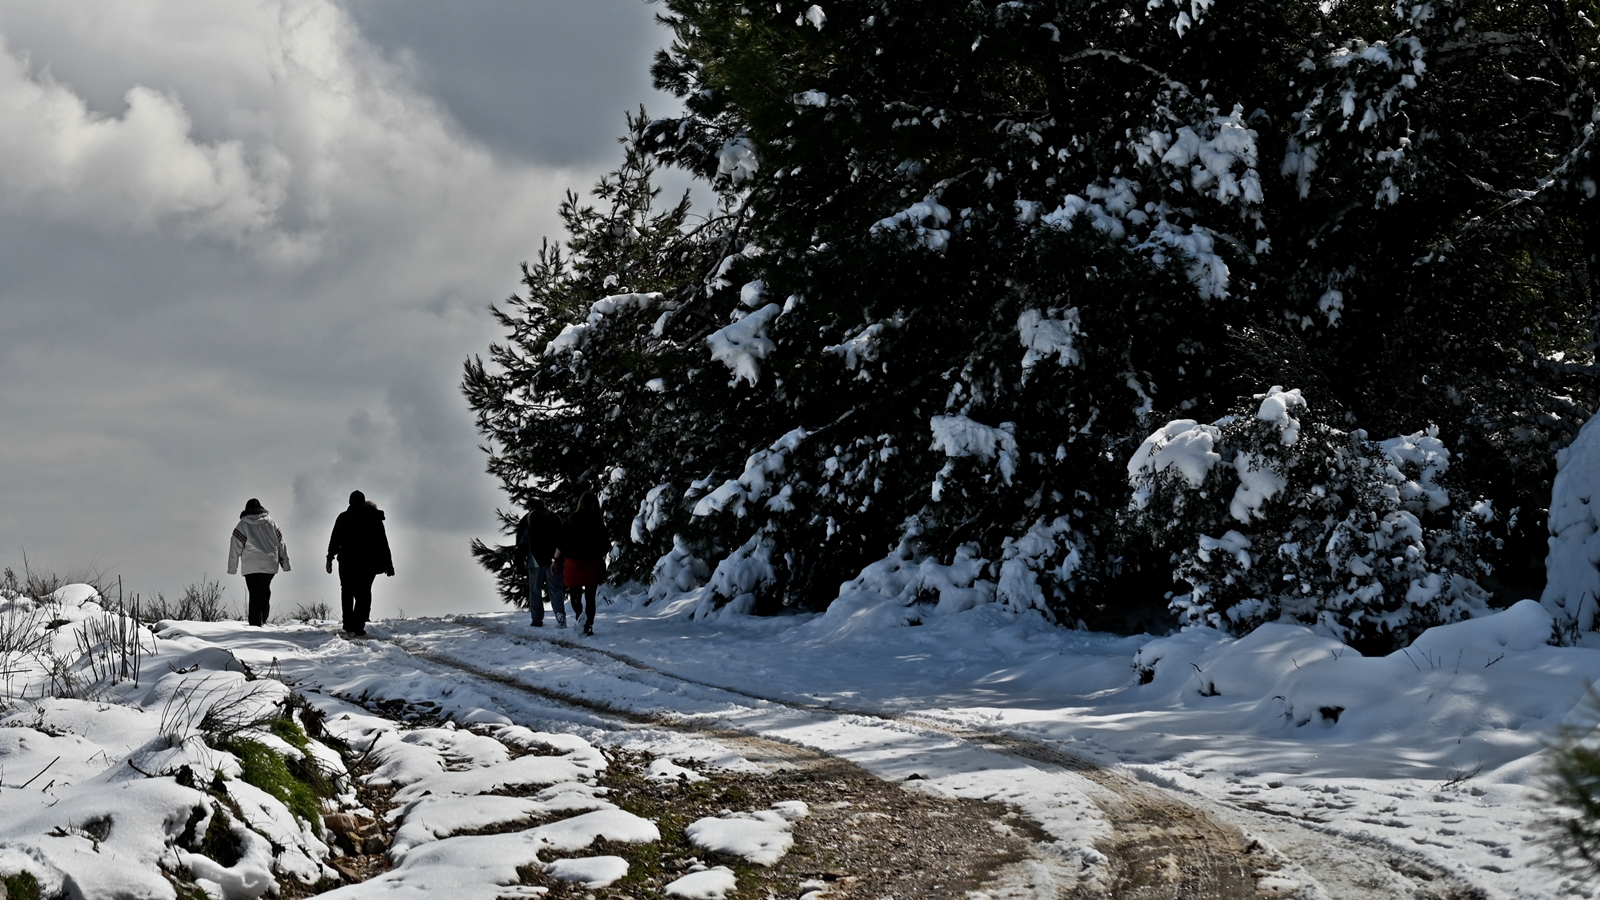 Χιόνια Αθήνα – επόμενες μέρες: Έρχεται «τσουχτερό κρύο», ποιες περιοχές θα ντυθούν στα λευκά